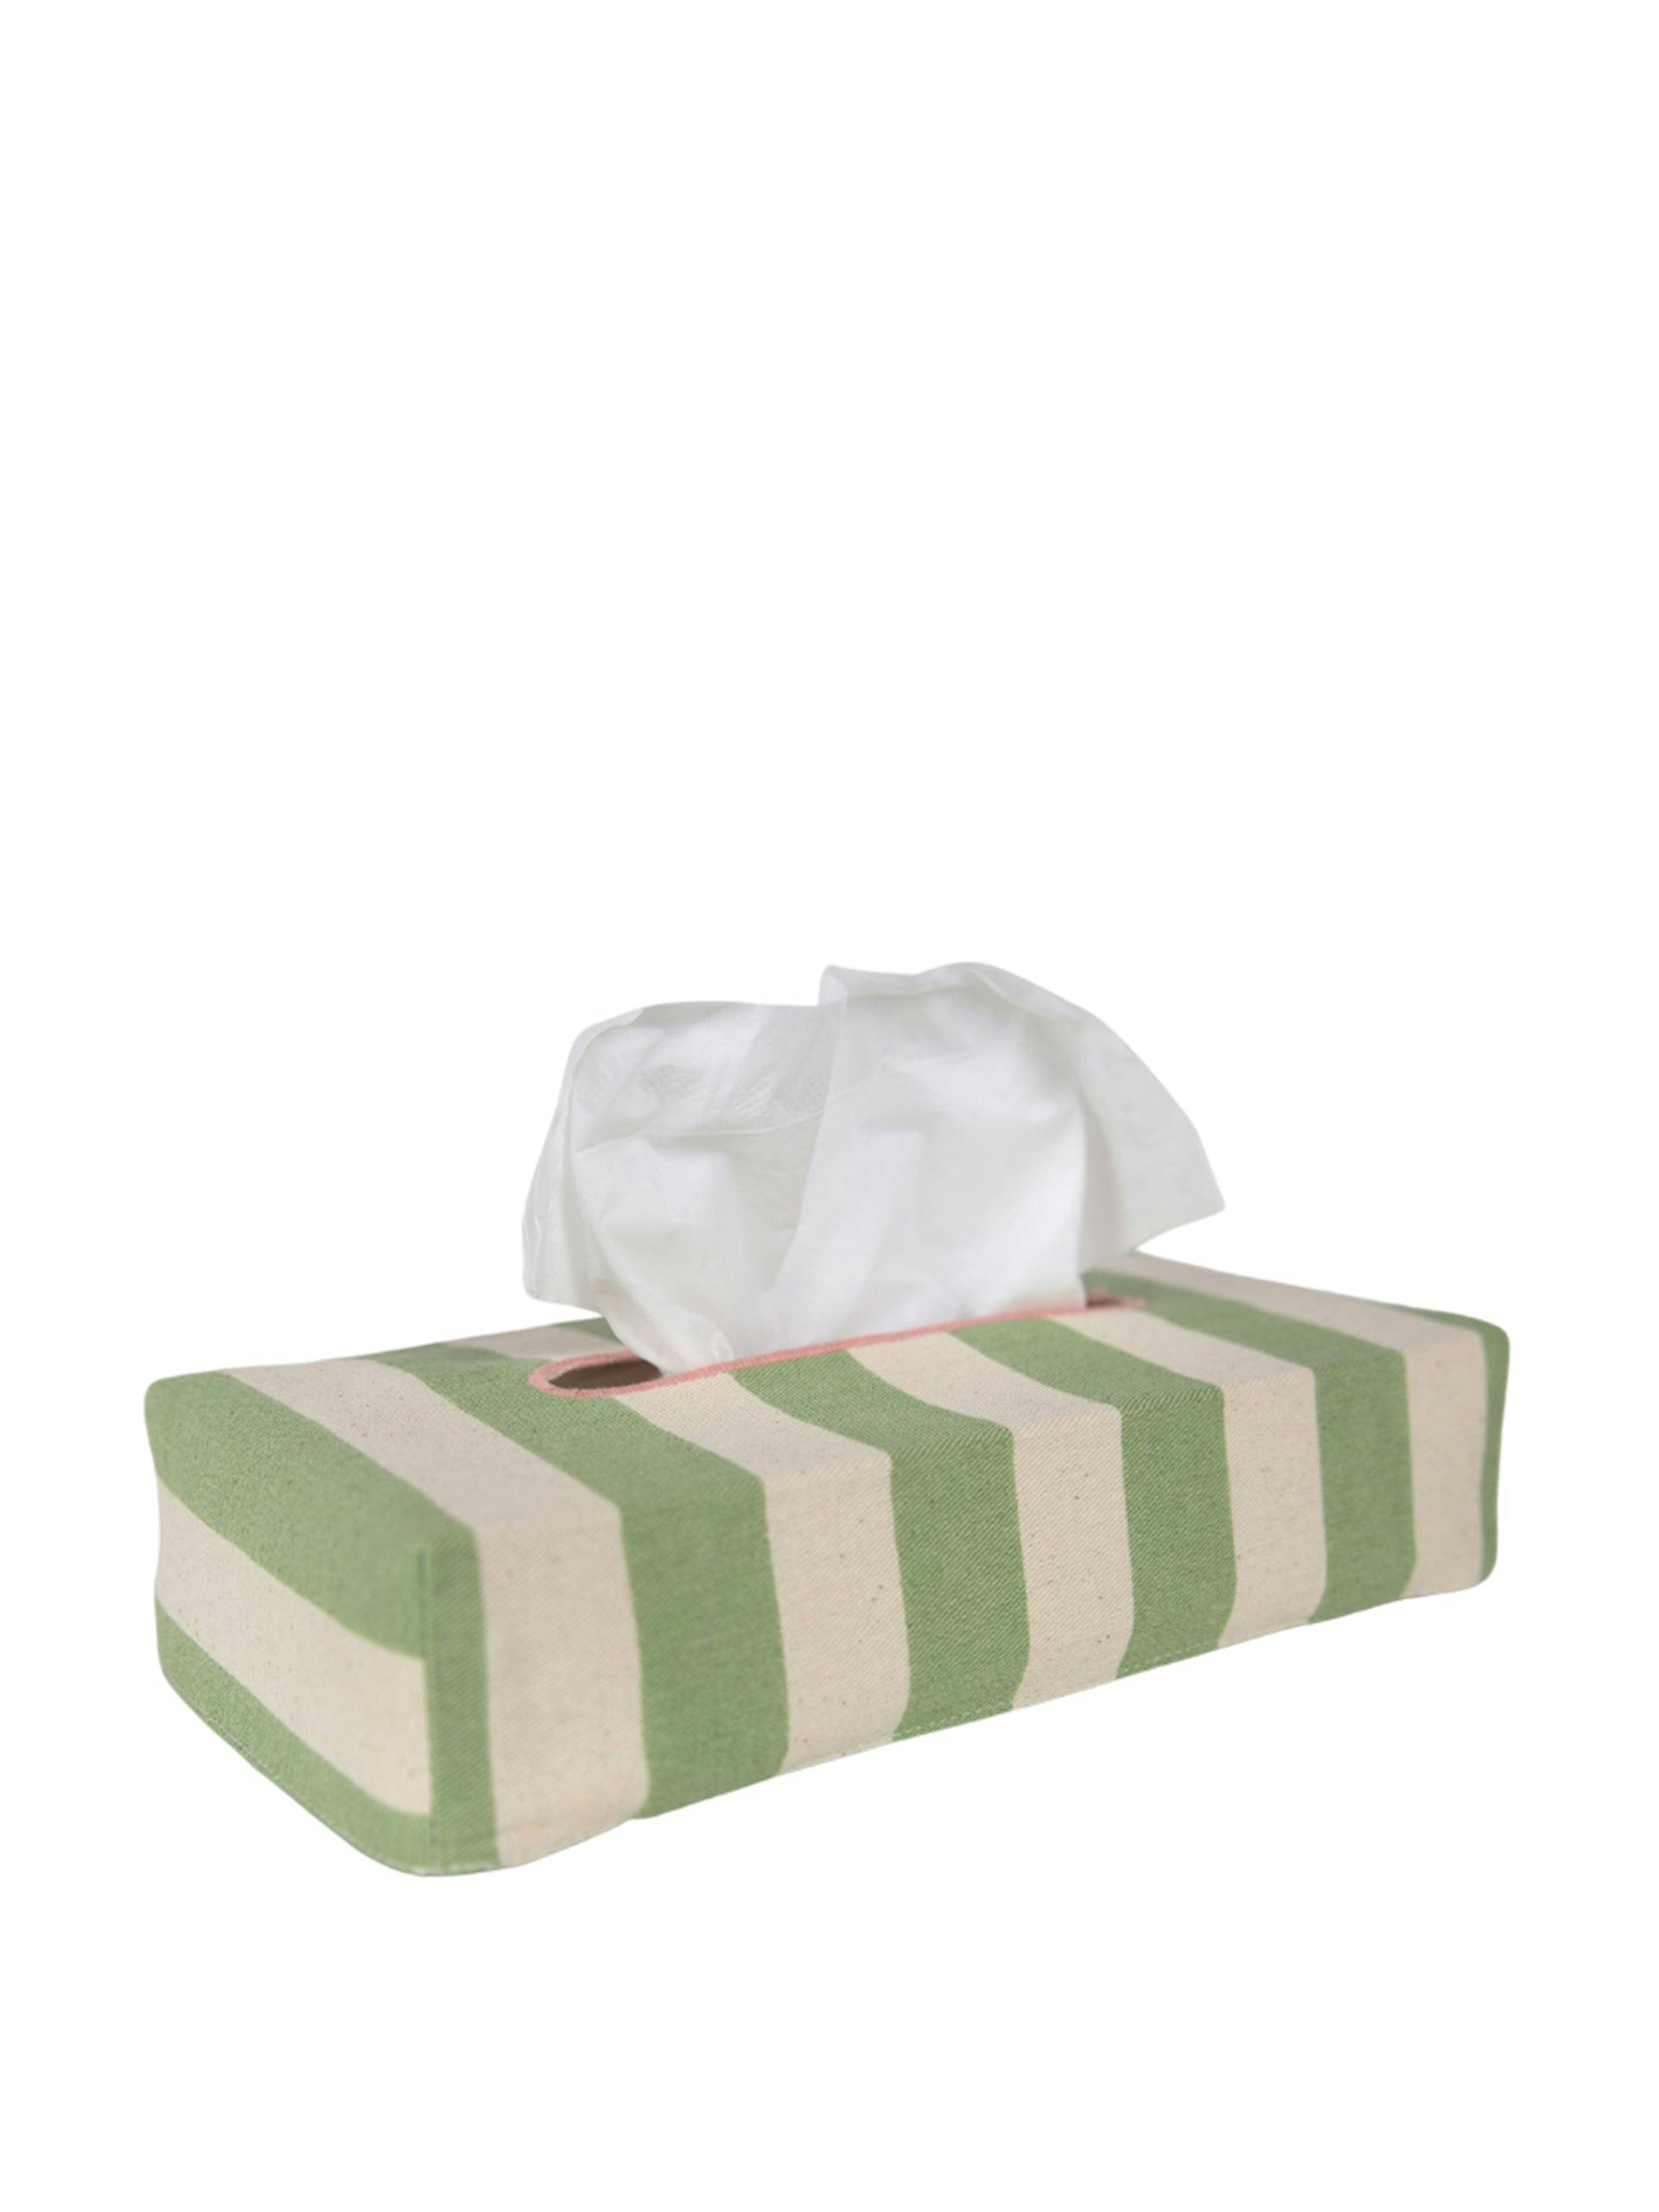 Skinny Tangier Stripe tissue box cover